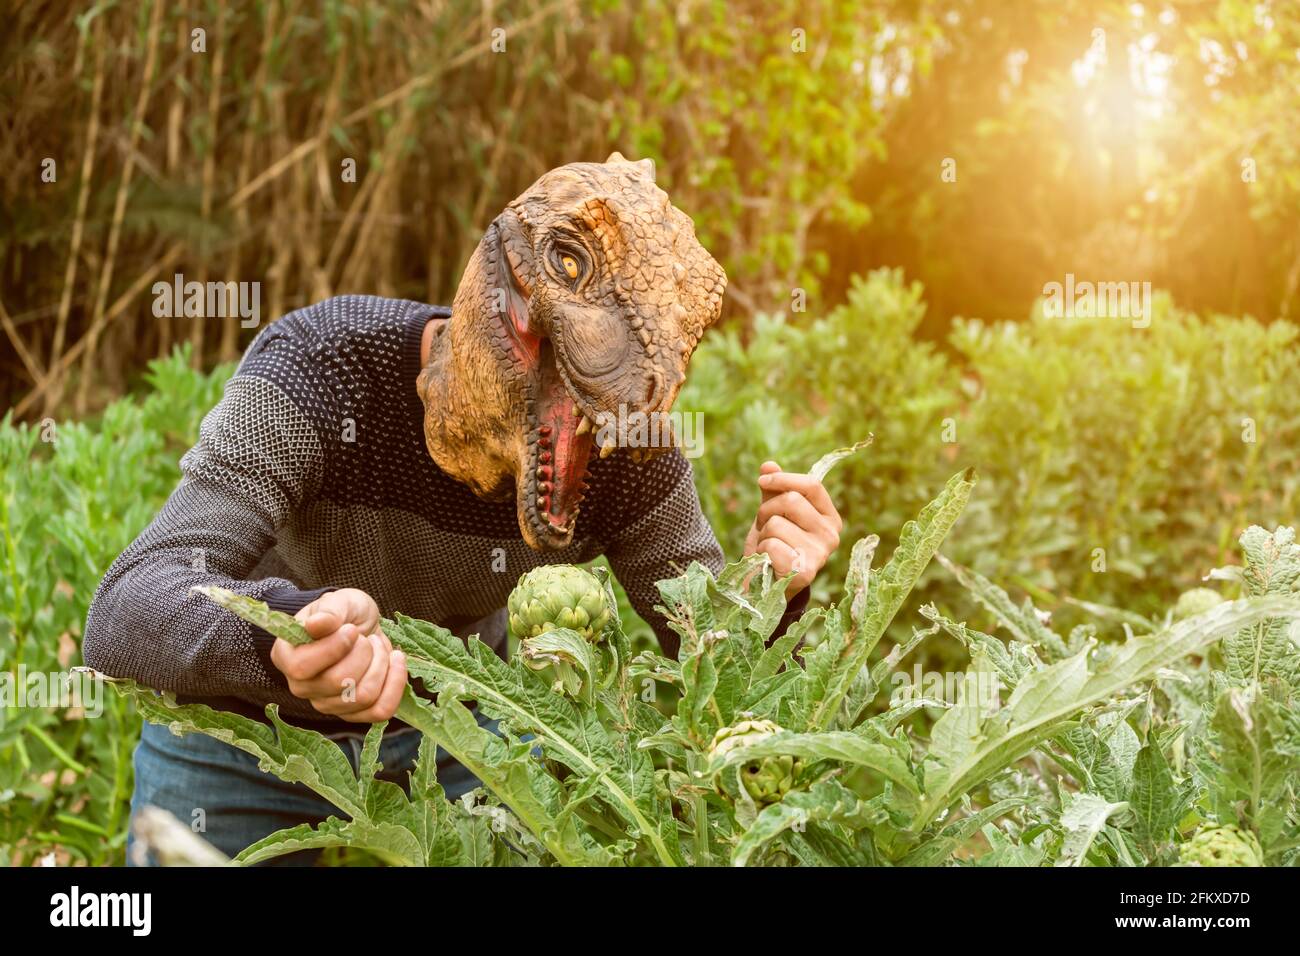 Mann mit Dinosaurier Tier Kopf Maske essen Artischocken im Gemüsegarten bei Sonnenuntergang. Stockfoto